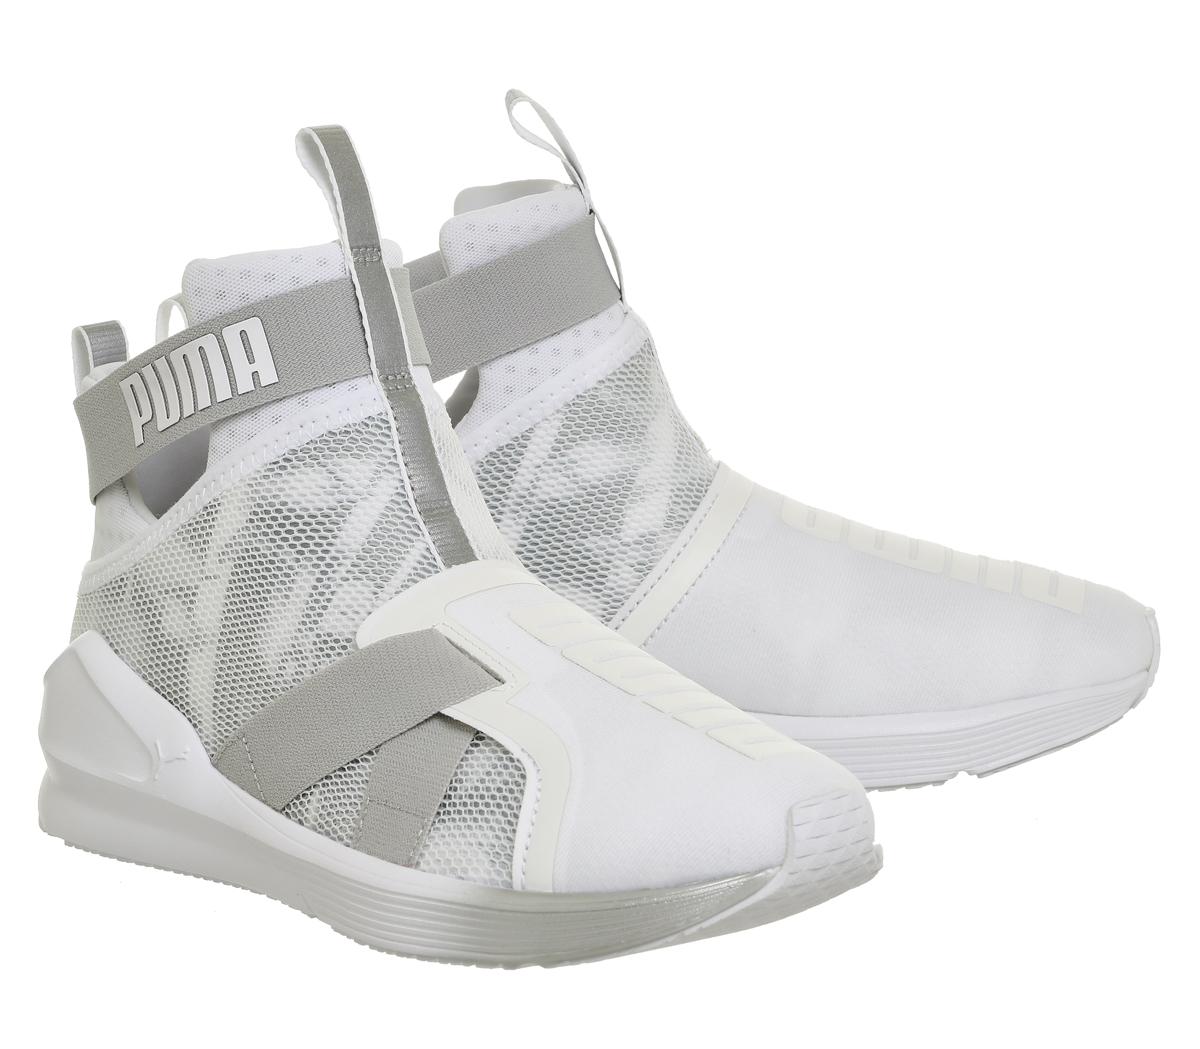 PUMA Synthetic Fierce Strap Swan Wn's Cross-trainer Shoe in White - Lyst